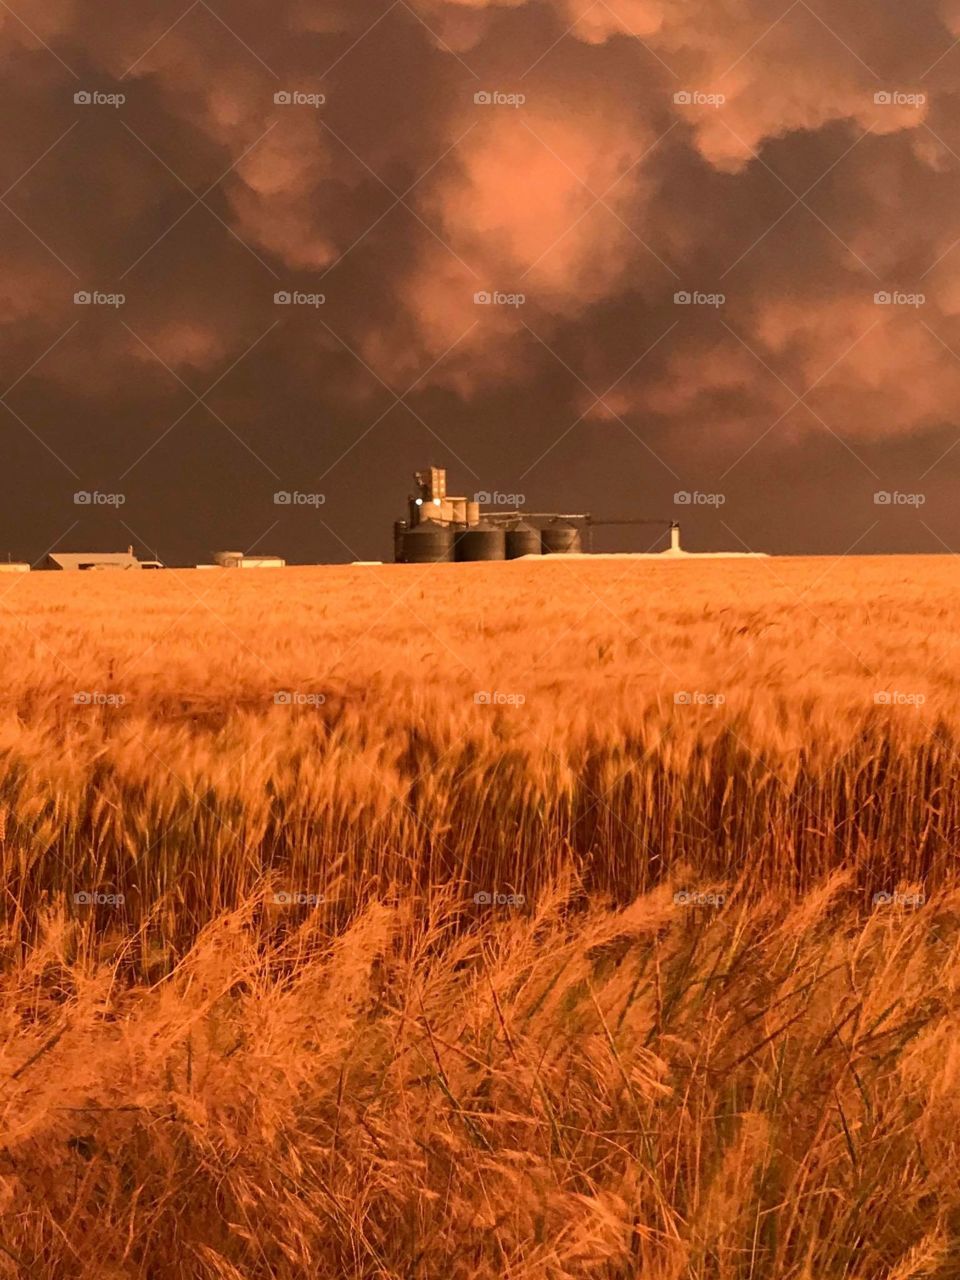 Kansas wheat fields blowing in the wind